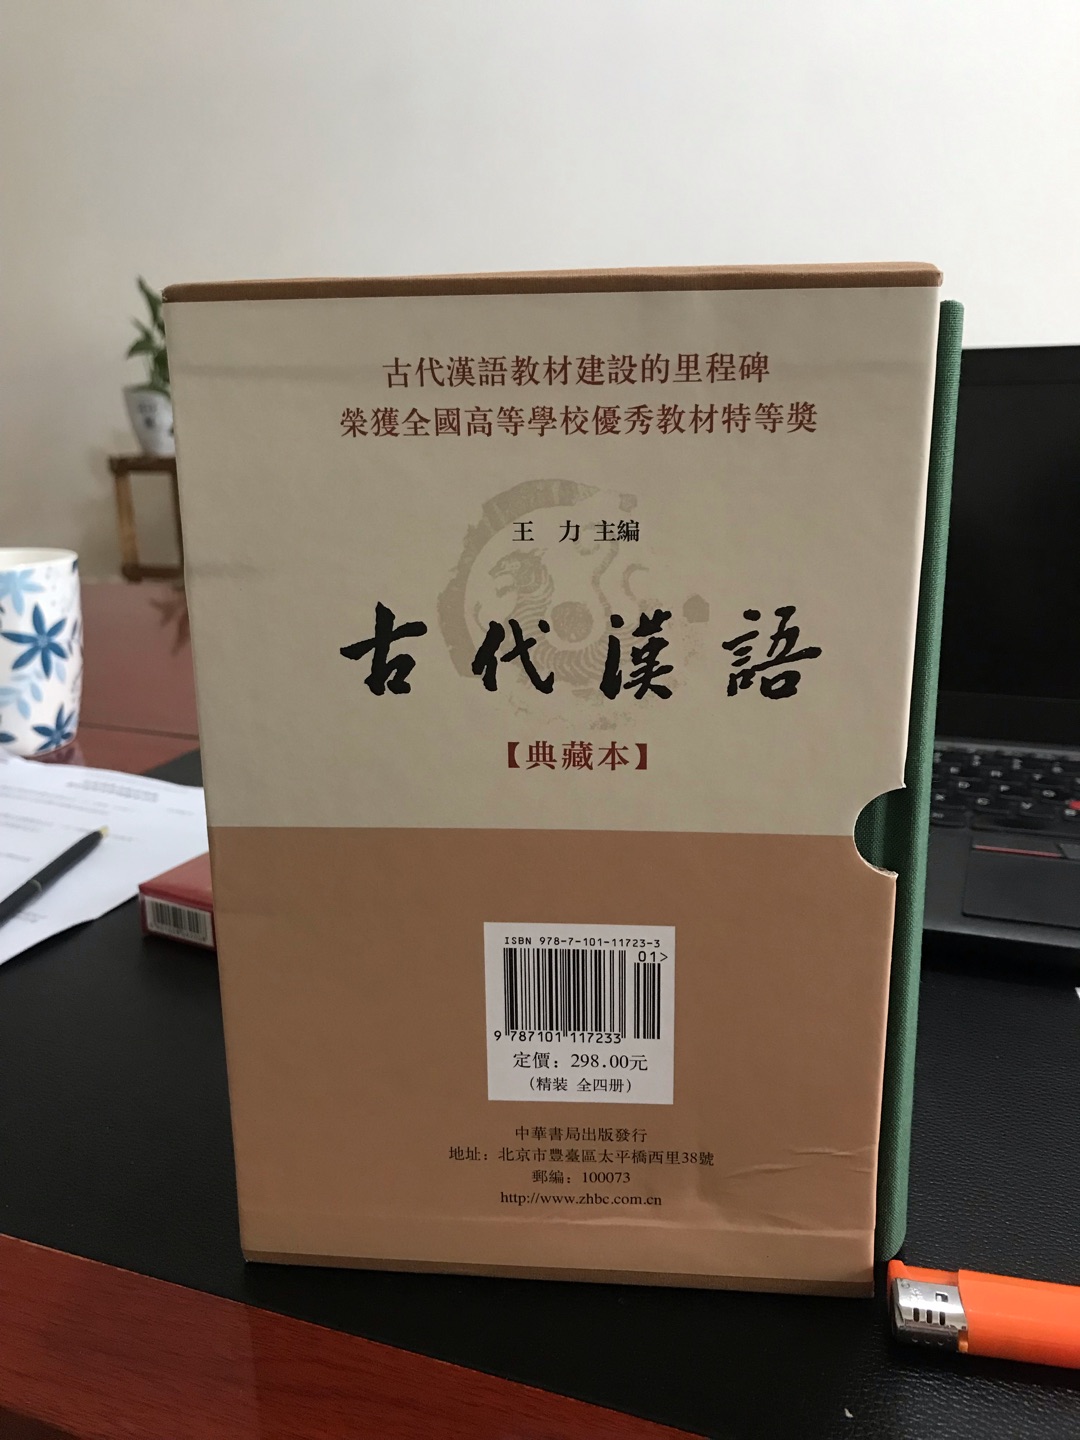 古代汉语典藏本，权**，学术性较强，装帧精美，排版清晰，中华书局值得信赖！